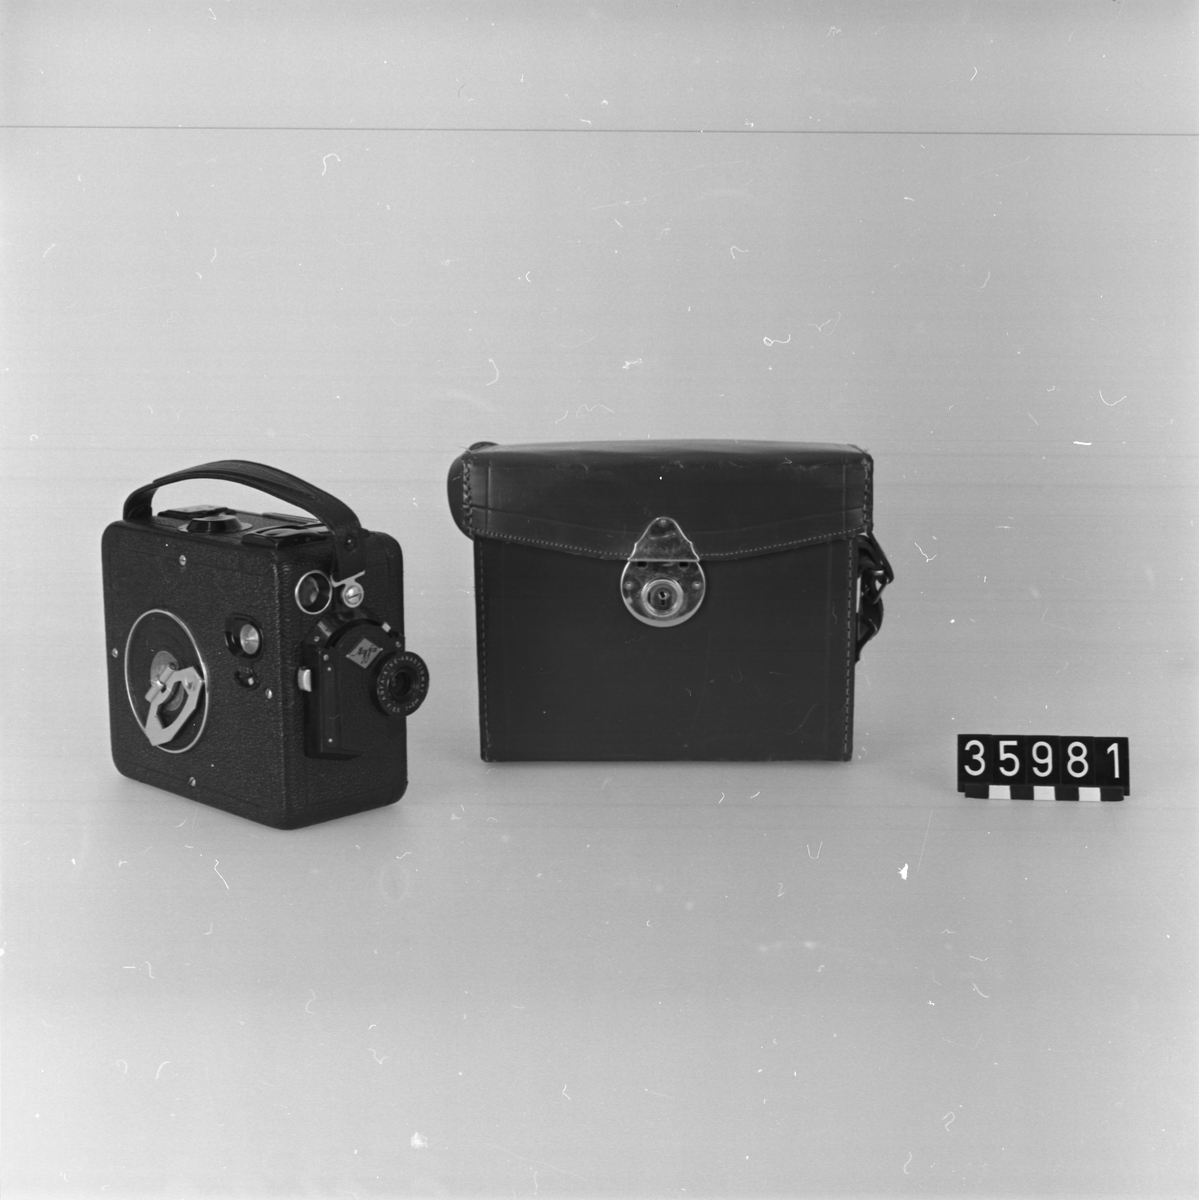 Smalfilmskamera, för 16 mm film. Läderklädd aluminiumplåt i läderväska med bärhandtag. Objektiv: Agfa-Kine Anastigmat F.3.5, brännvidd: 20 mm, fixfocus, grovinställning för skärpeområden 1-3 meter resp. 2-oändligt. Låsbar utlösare. Filmräkneskala 1-12. Kassettladdning.
Tillbehör: Tom filmkassett Agfa Isopan medföljer.